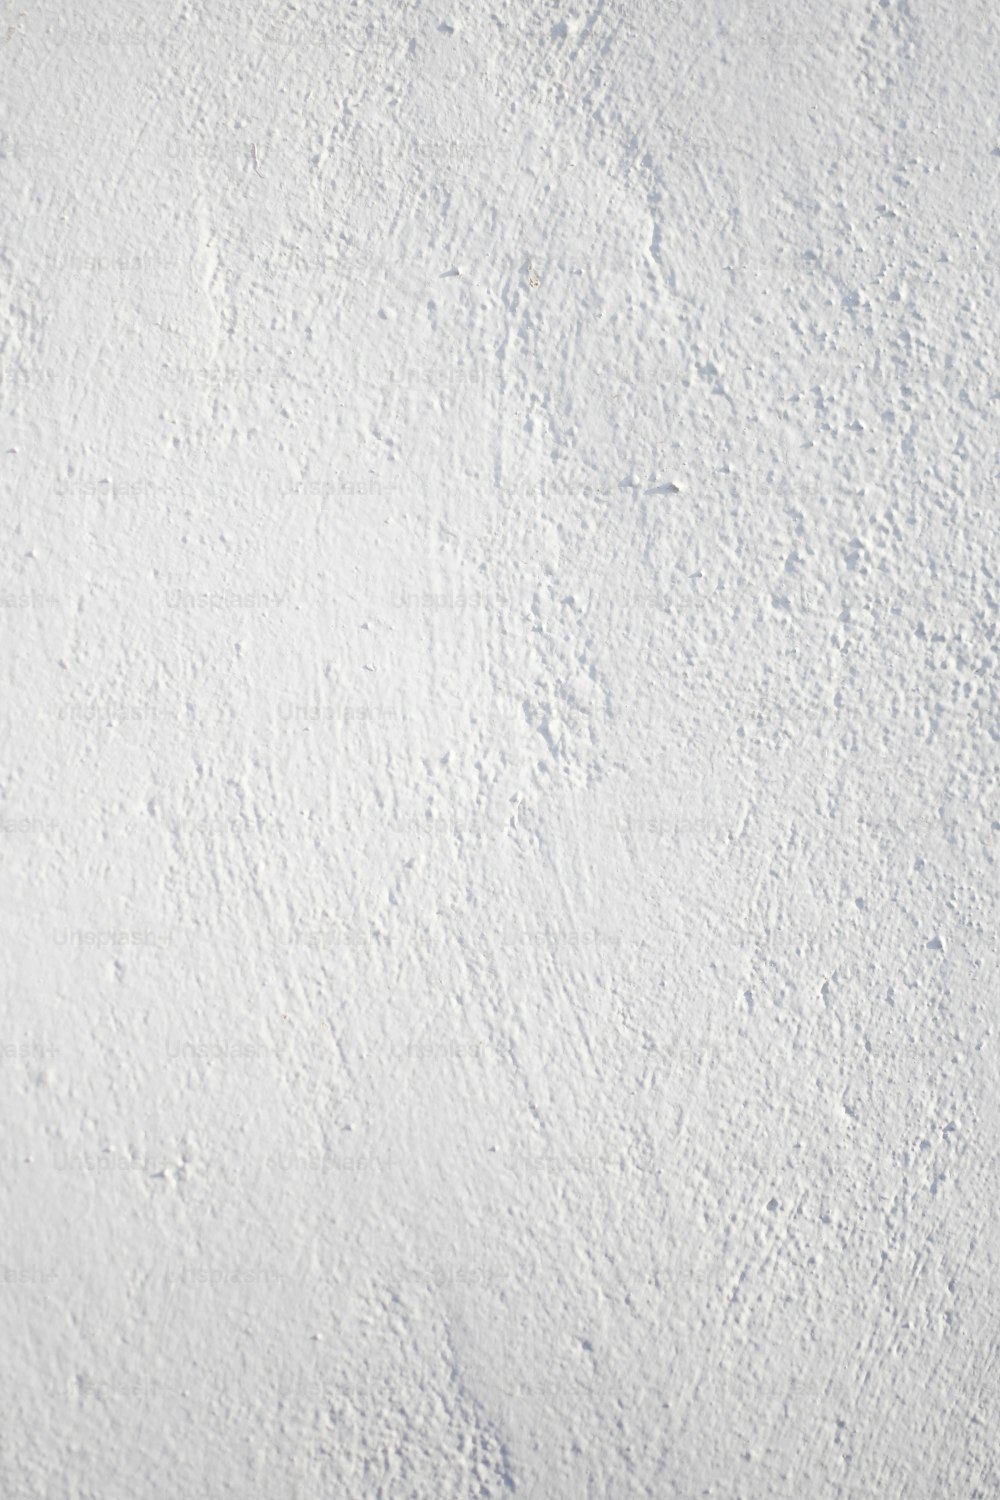 una superficie bianca con crepe